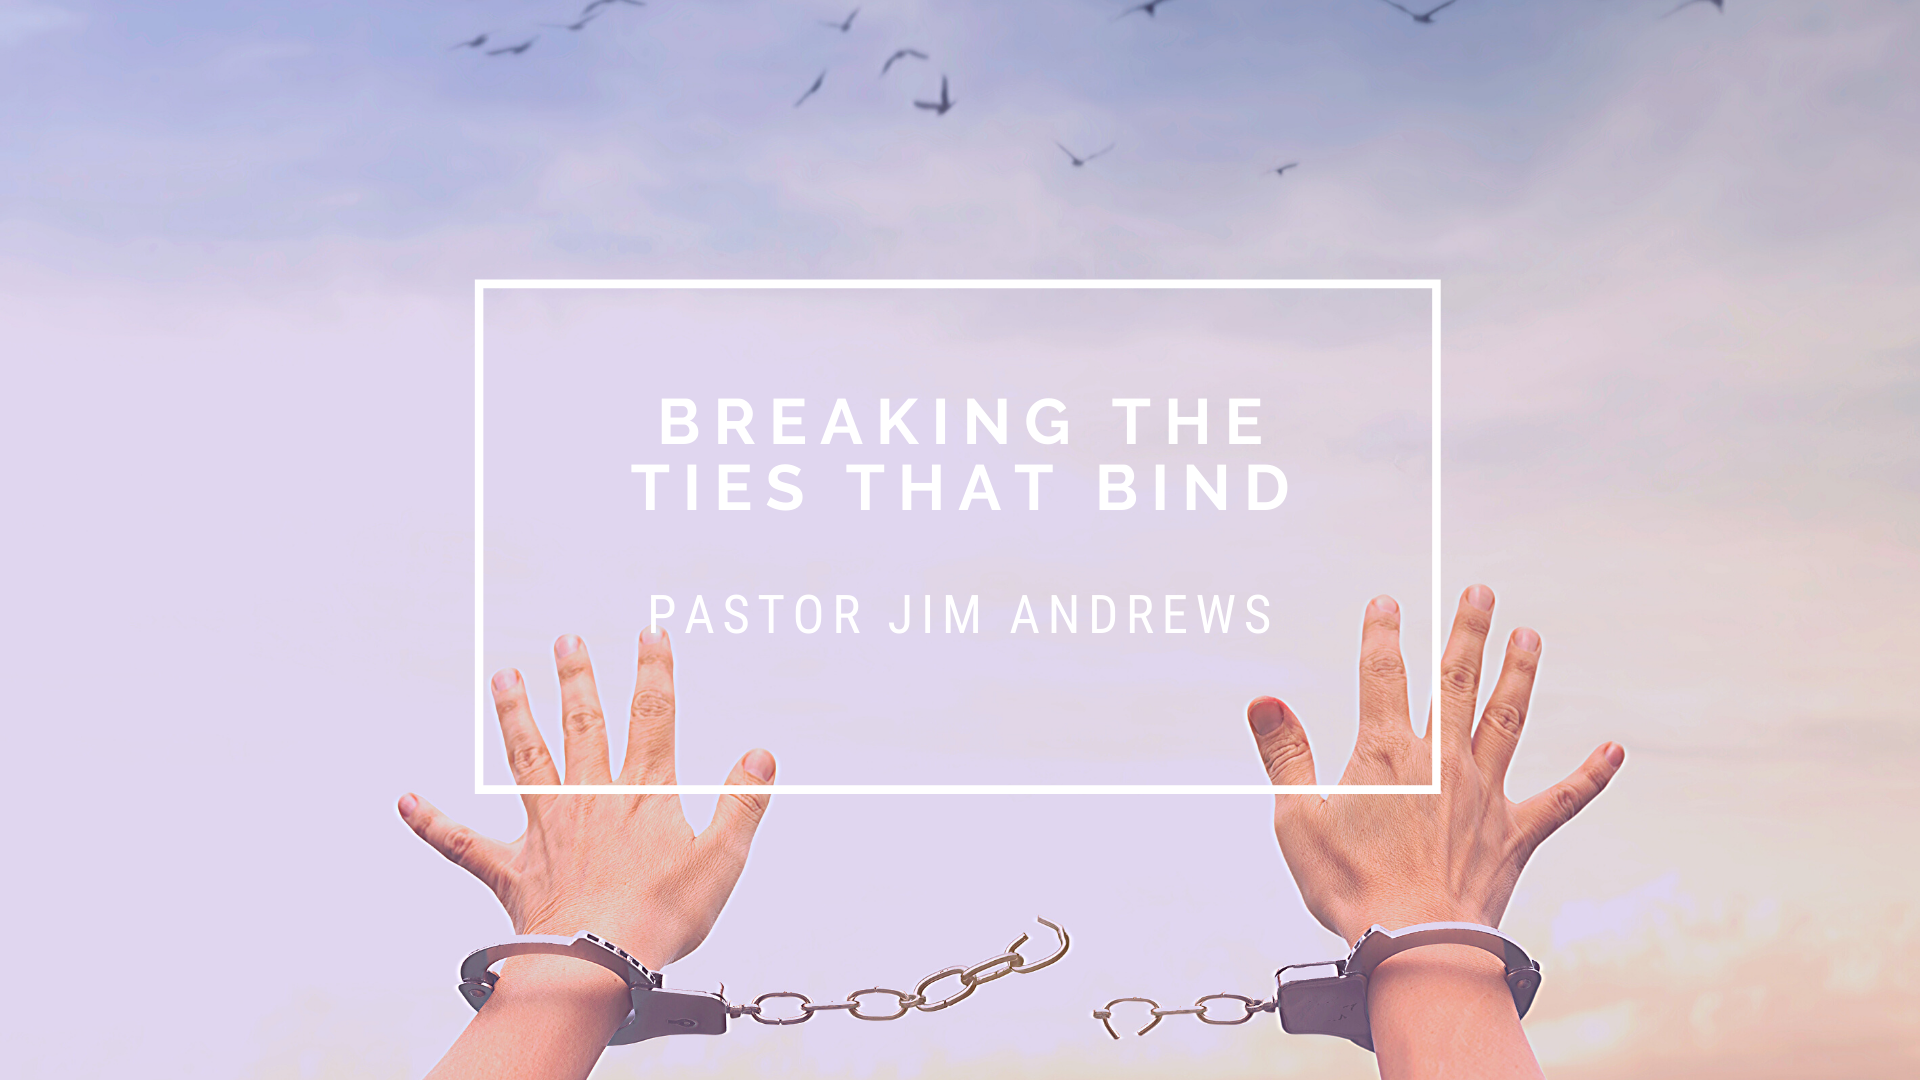 Breaking the Ties that Bind:  Find the Missing Link – Genesis 39